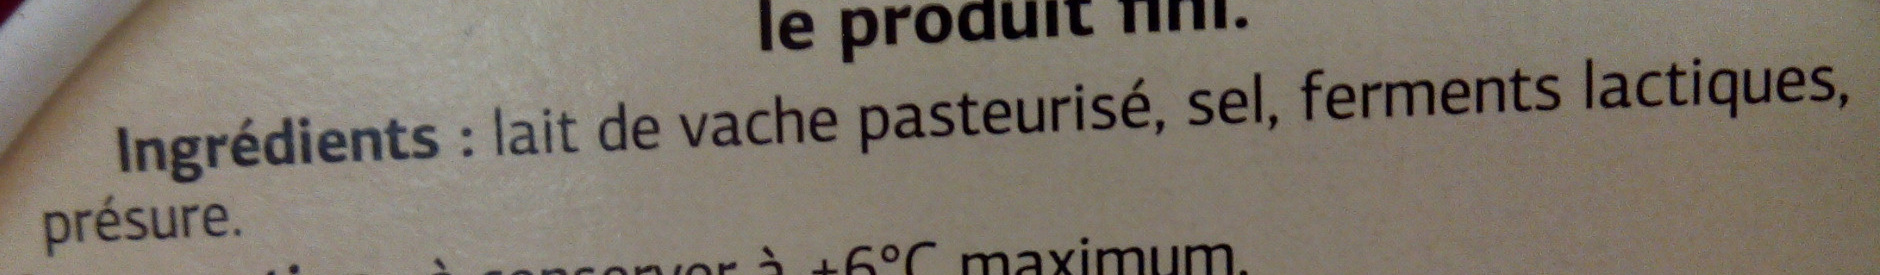 Coulommiers (23 % MG) au Lait Pasteurisé - Ingrediënten - fr